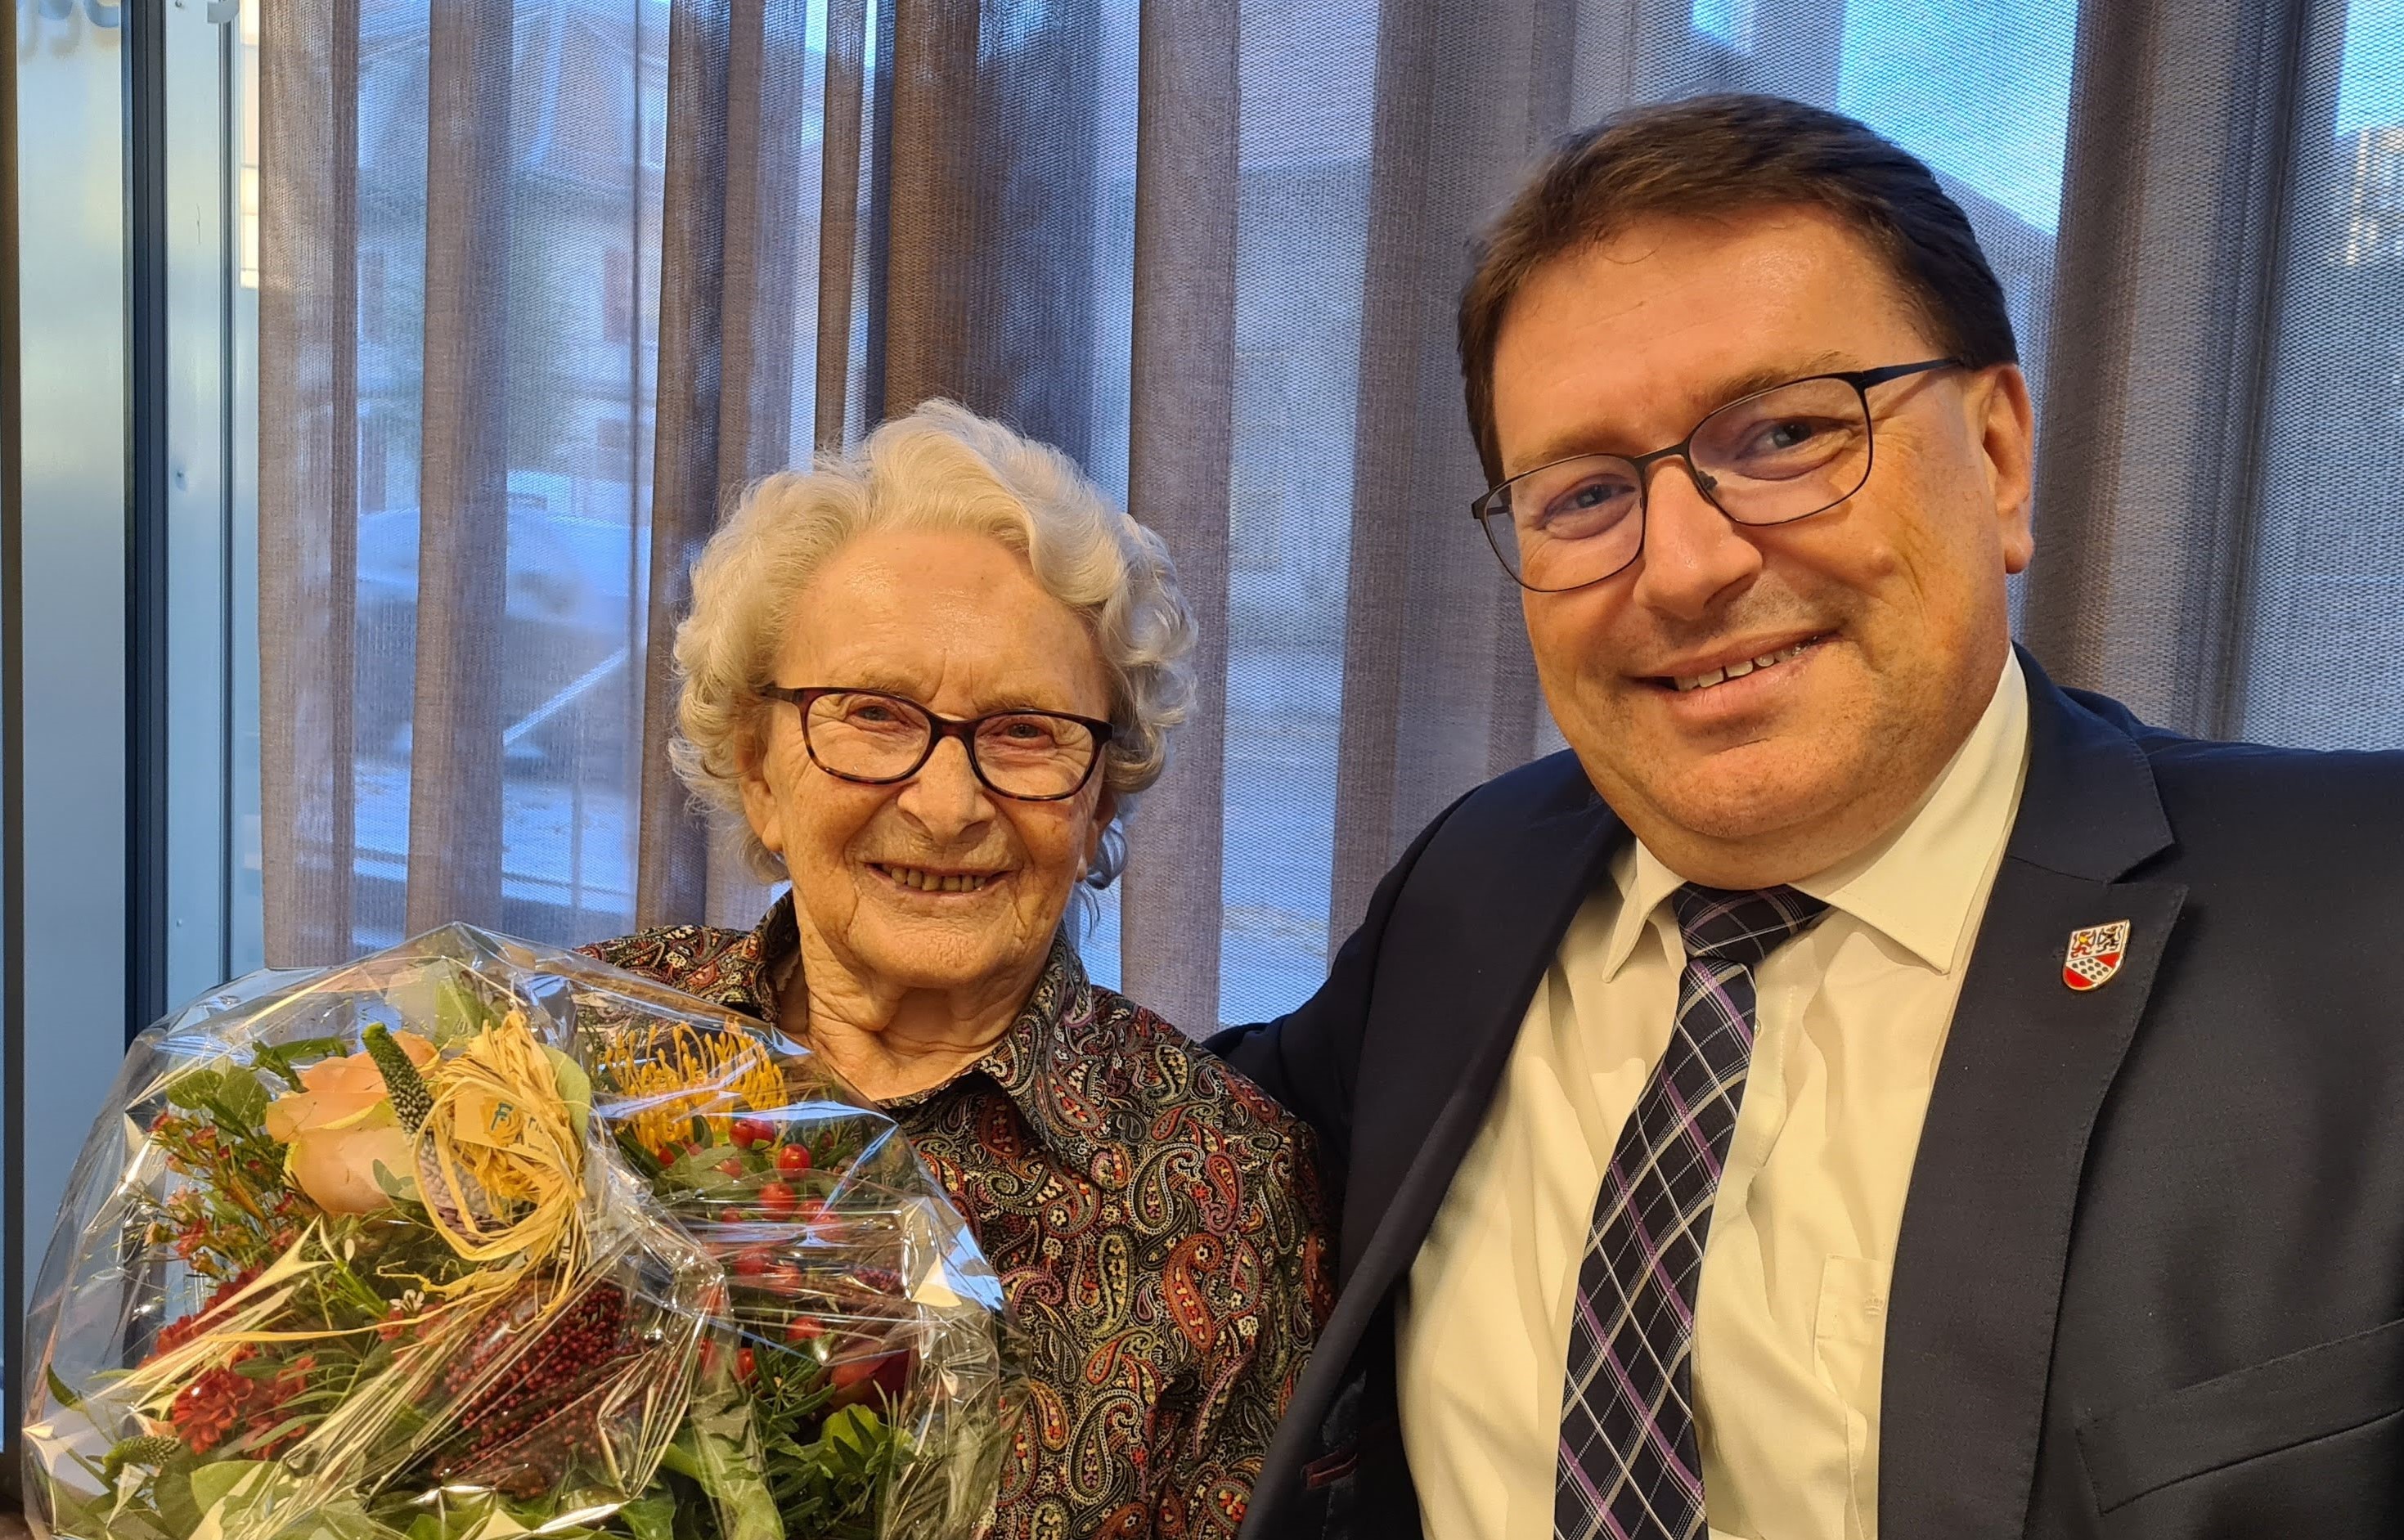 Am Donnerstag 17. November 2022, durfte Frau Ingeborg Patzig ihren 100. Geburtstag feiern!
Die Gemeindebehörden gratulieren herzlichst zum hohen Wiegenfest.
